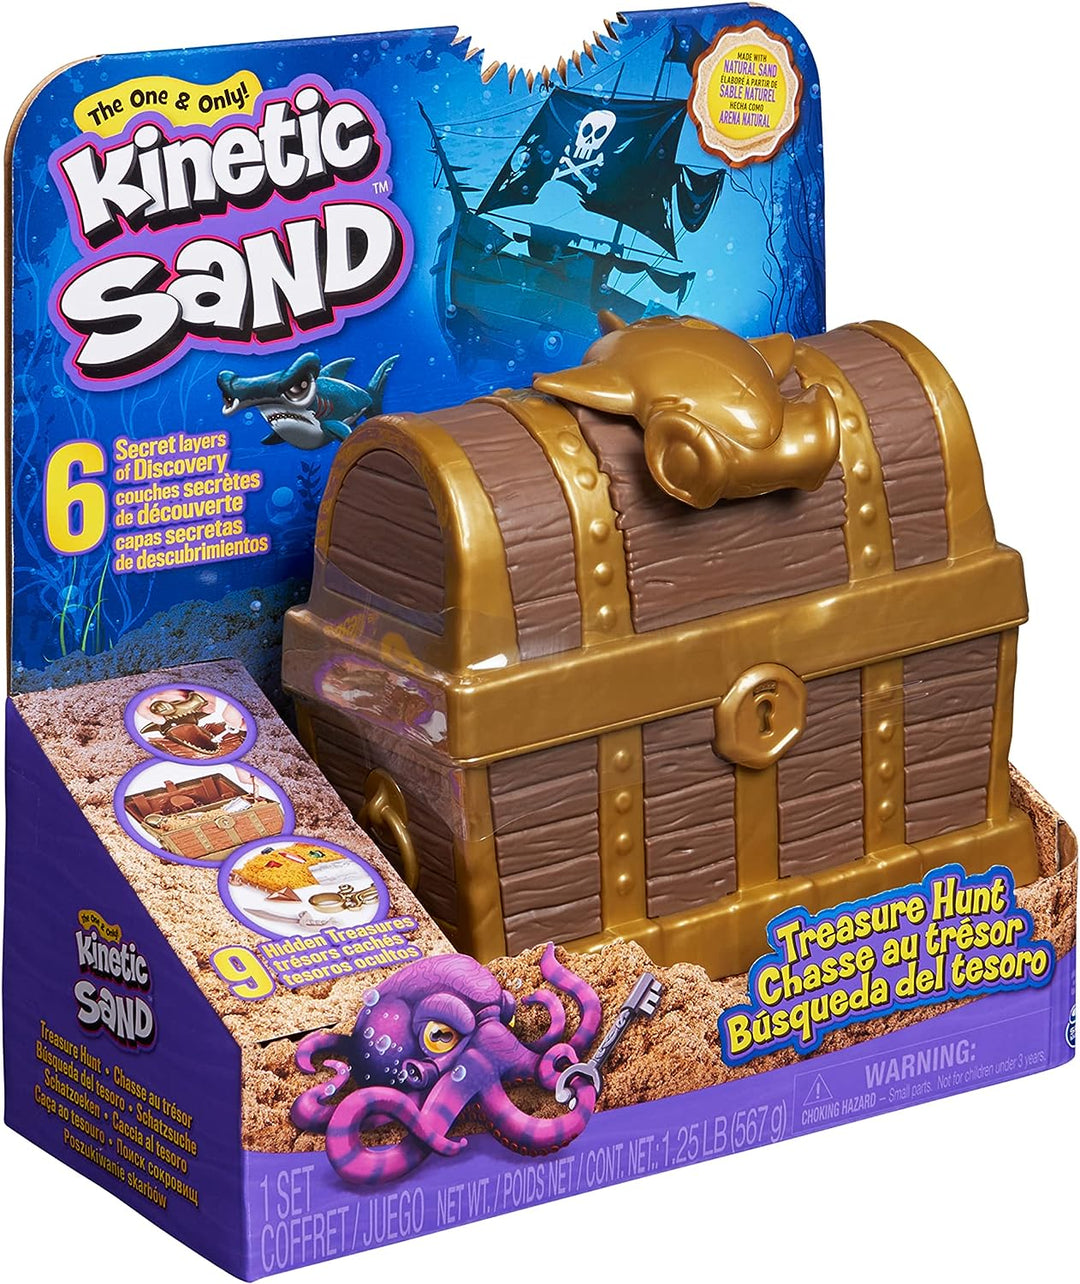 Kinetic Sand, Schatzsuche-Spielset mit 9 Überraschungsenthüllungen, 567 g, braun und selten